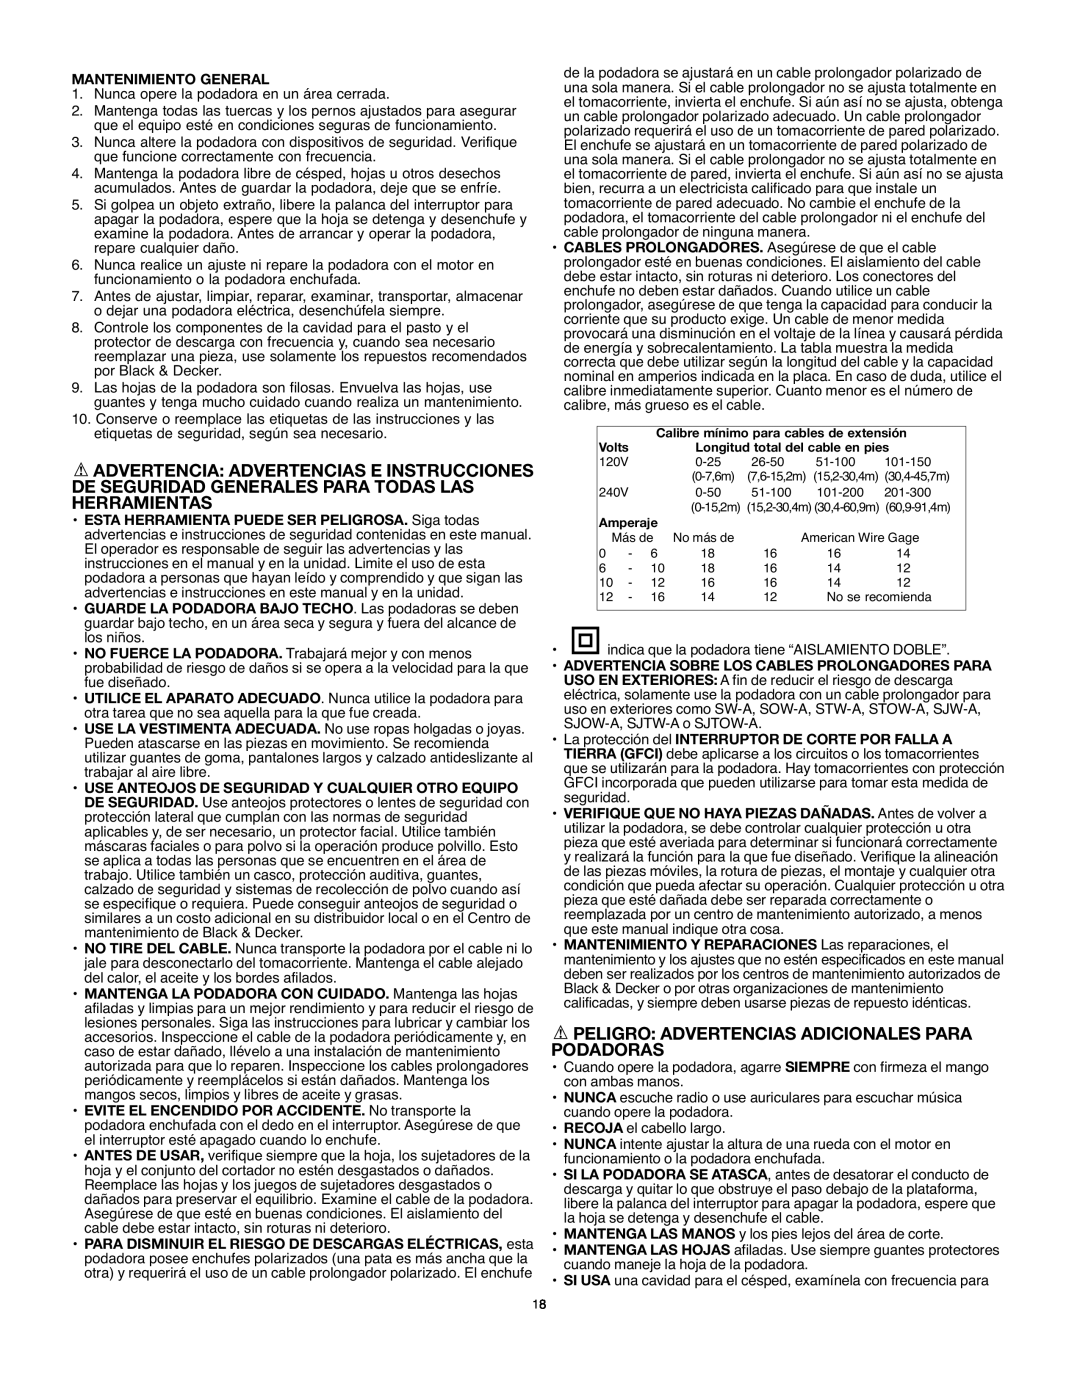 Black & Decker MM575 instruction manual Peligro Advertencias Adicionales Para Podadoras 